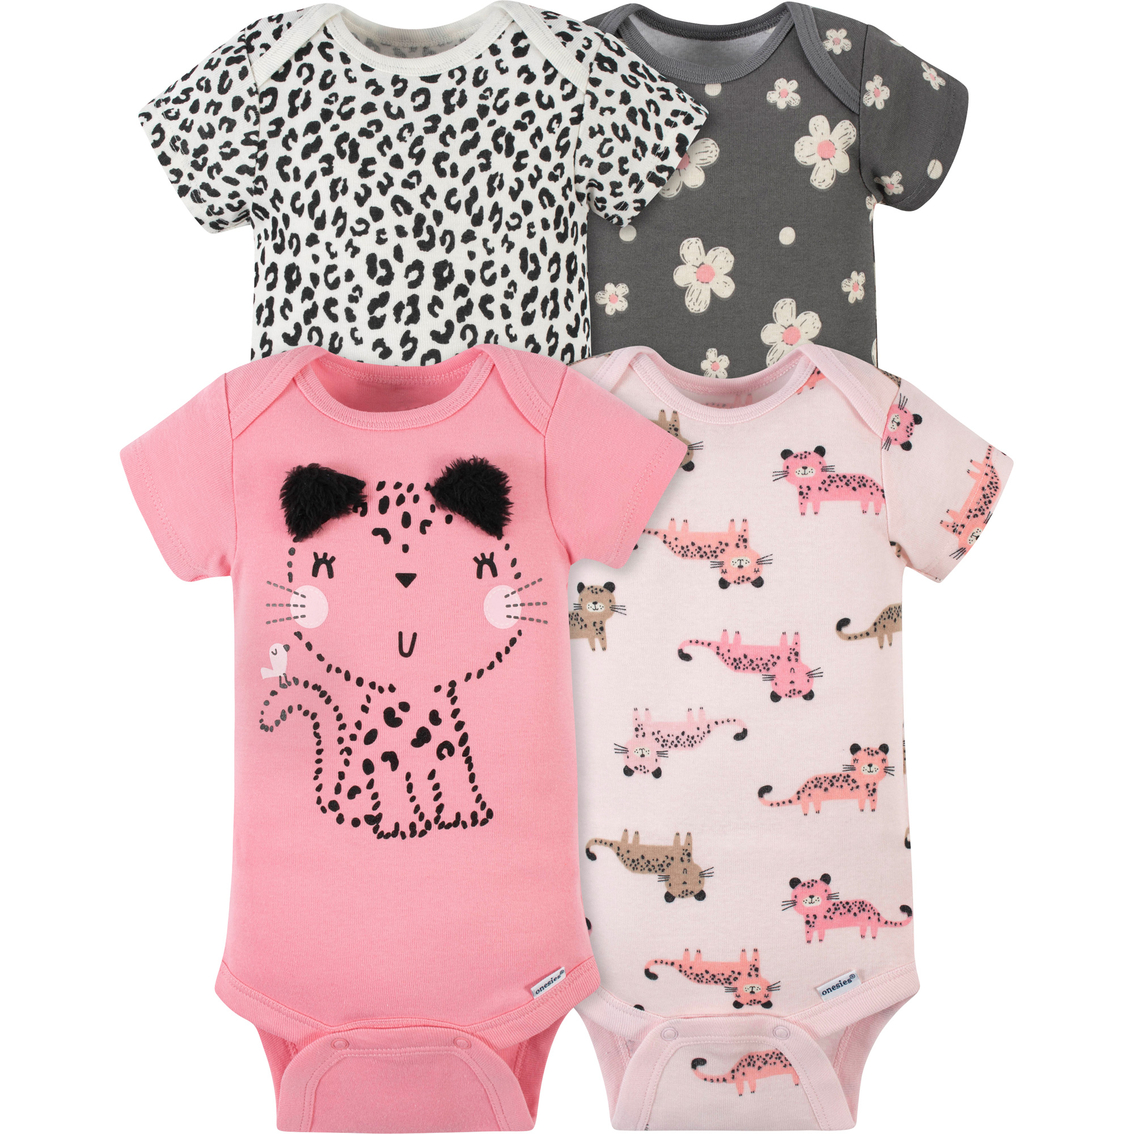 Gerber Infant Girls Leopard Onesies Bodysuit 4 Pk. | Baby Girl 0-24 ...